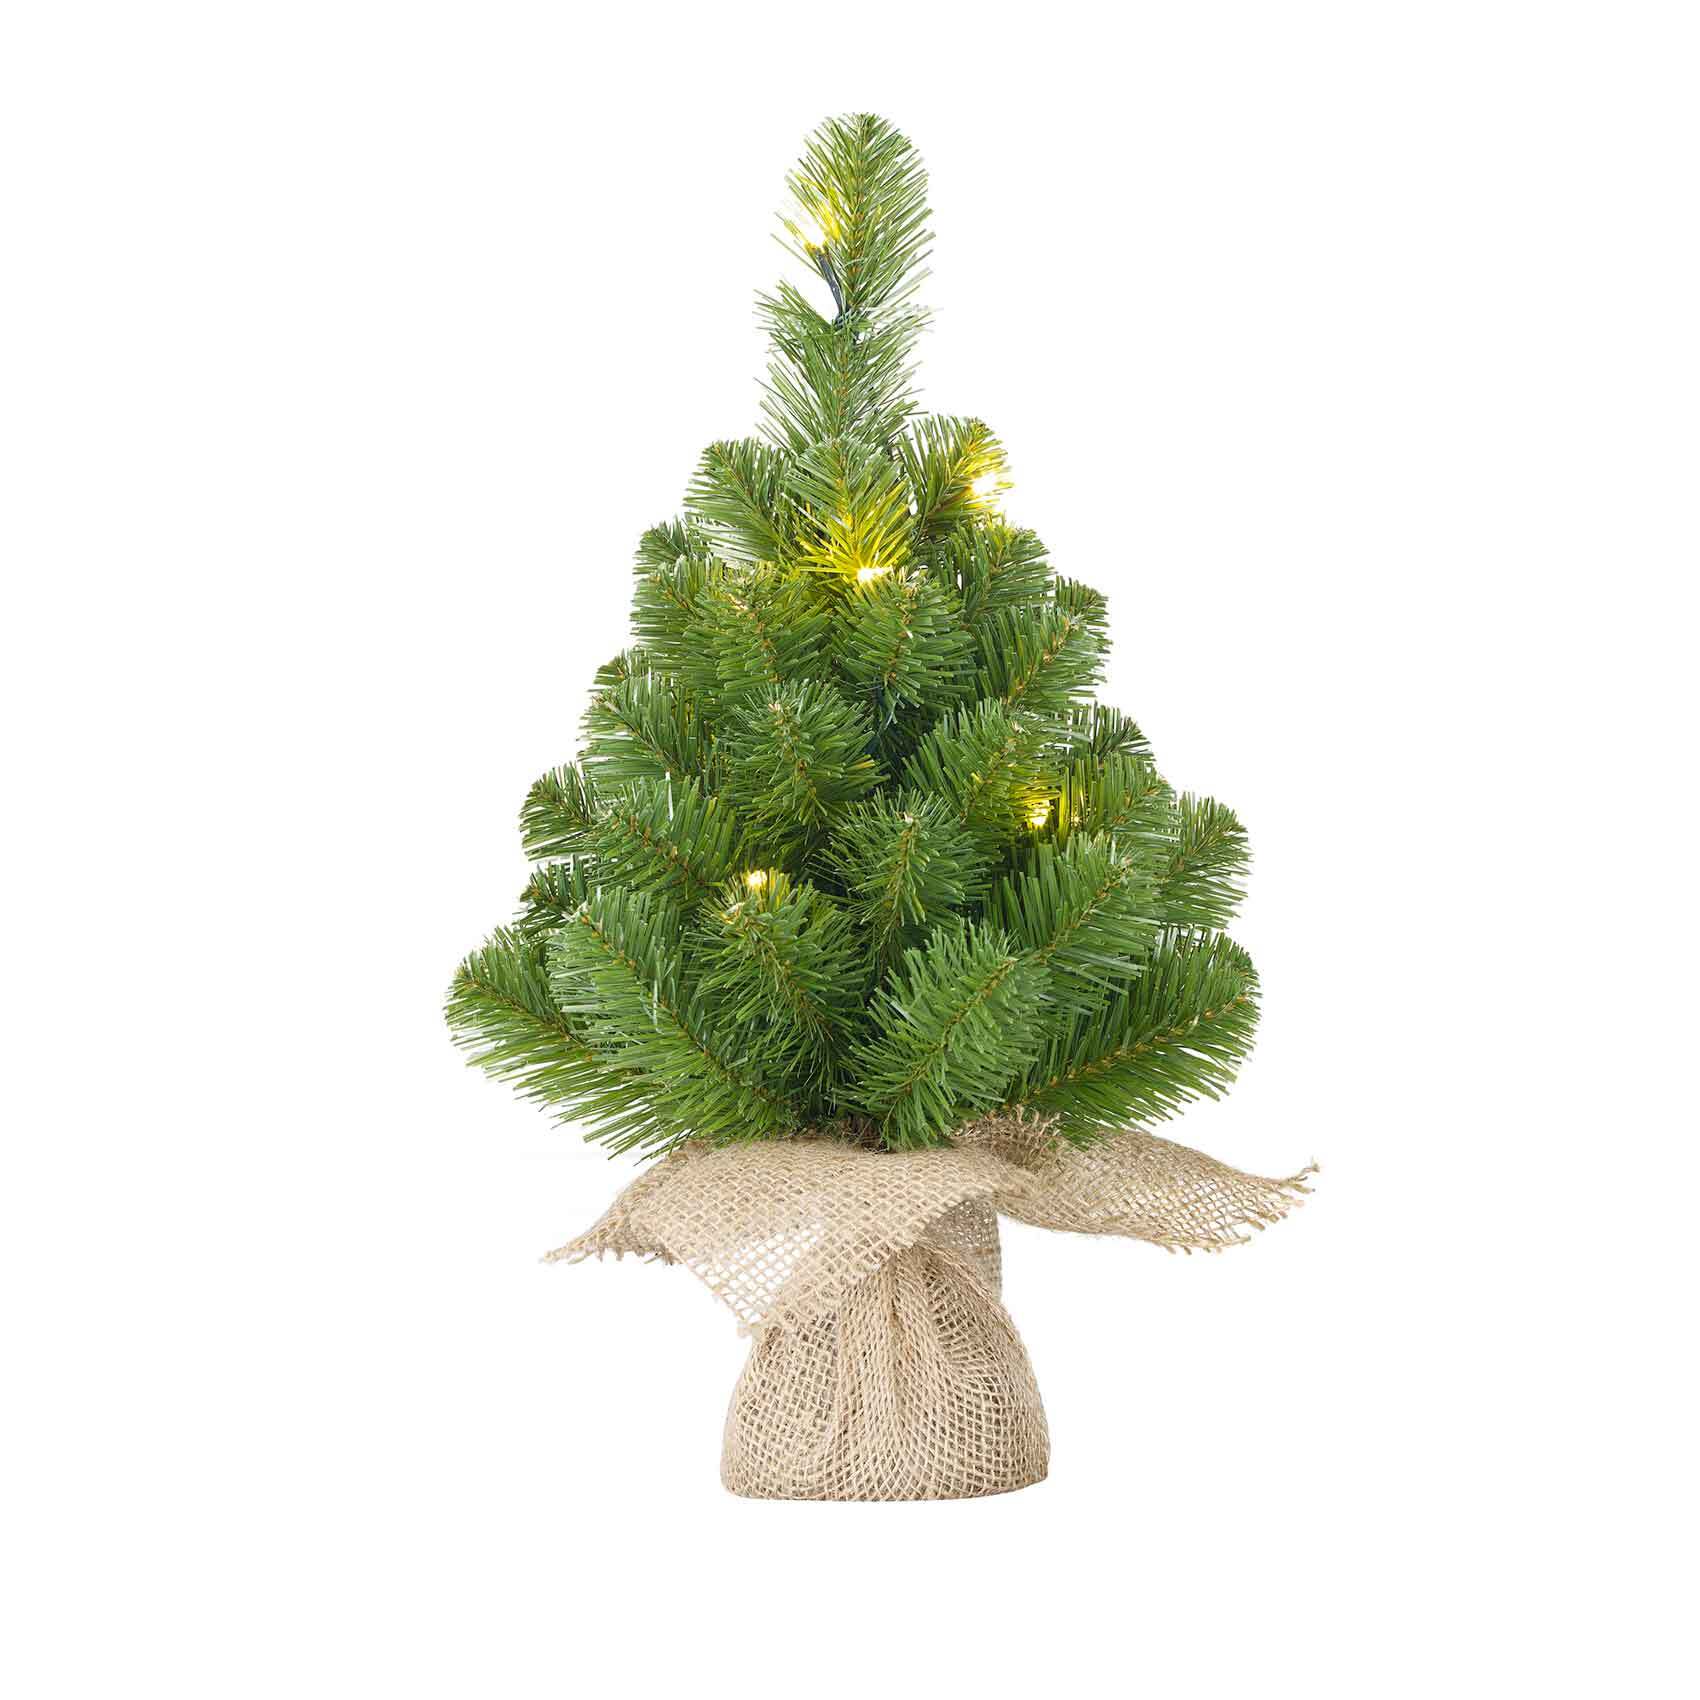 Blackbox norton kerstboom met led met jute groen 15 lampjes met warmwit led maat in cm: 60 x 23